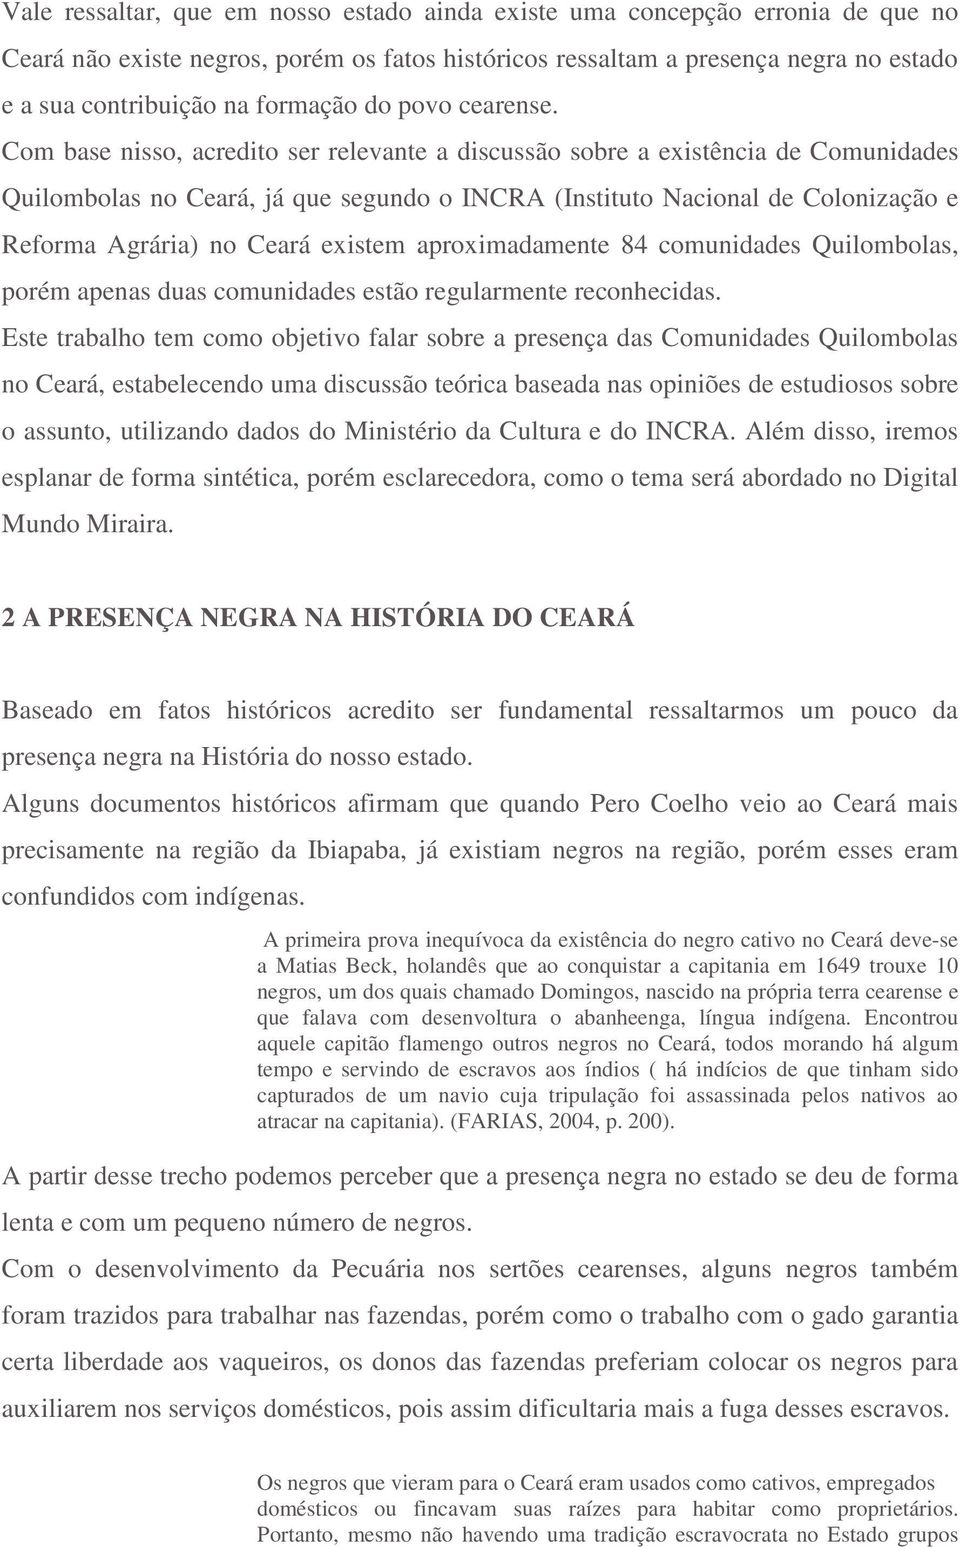 Com base nisso, acredito ser relevante a discussão sobre a existência de Comunidades Quilombolas no Ceará, já que segundo o INCRA (Instituto Nacional de Colonização e Reforma Agrária) no Ceará